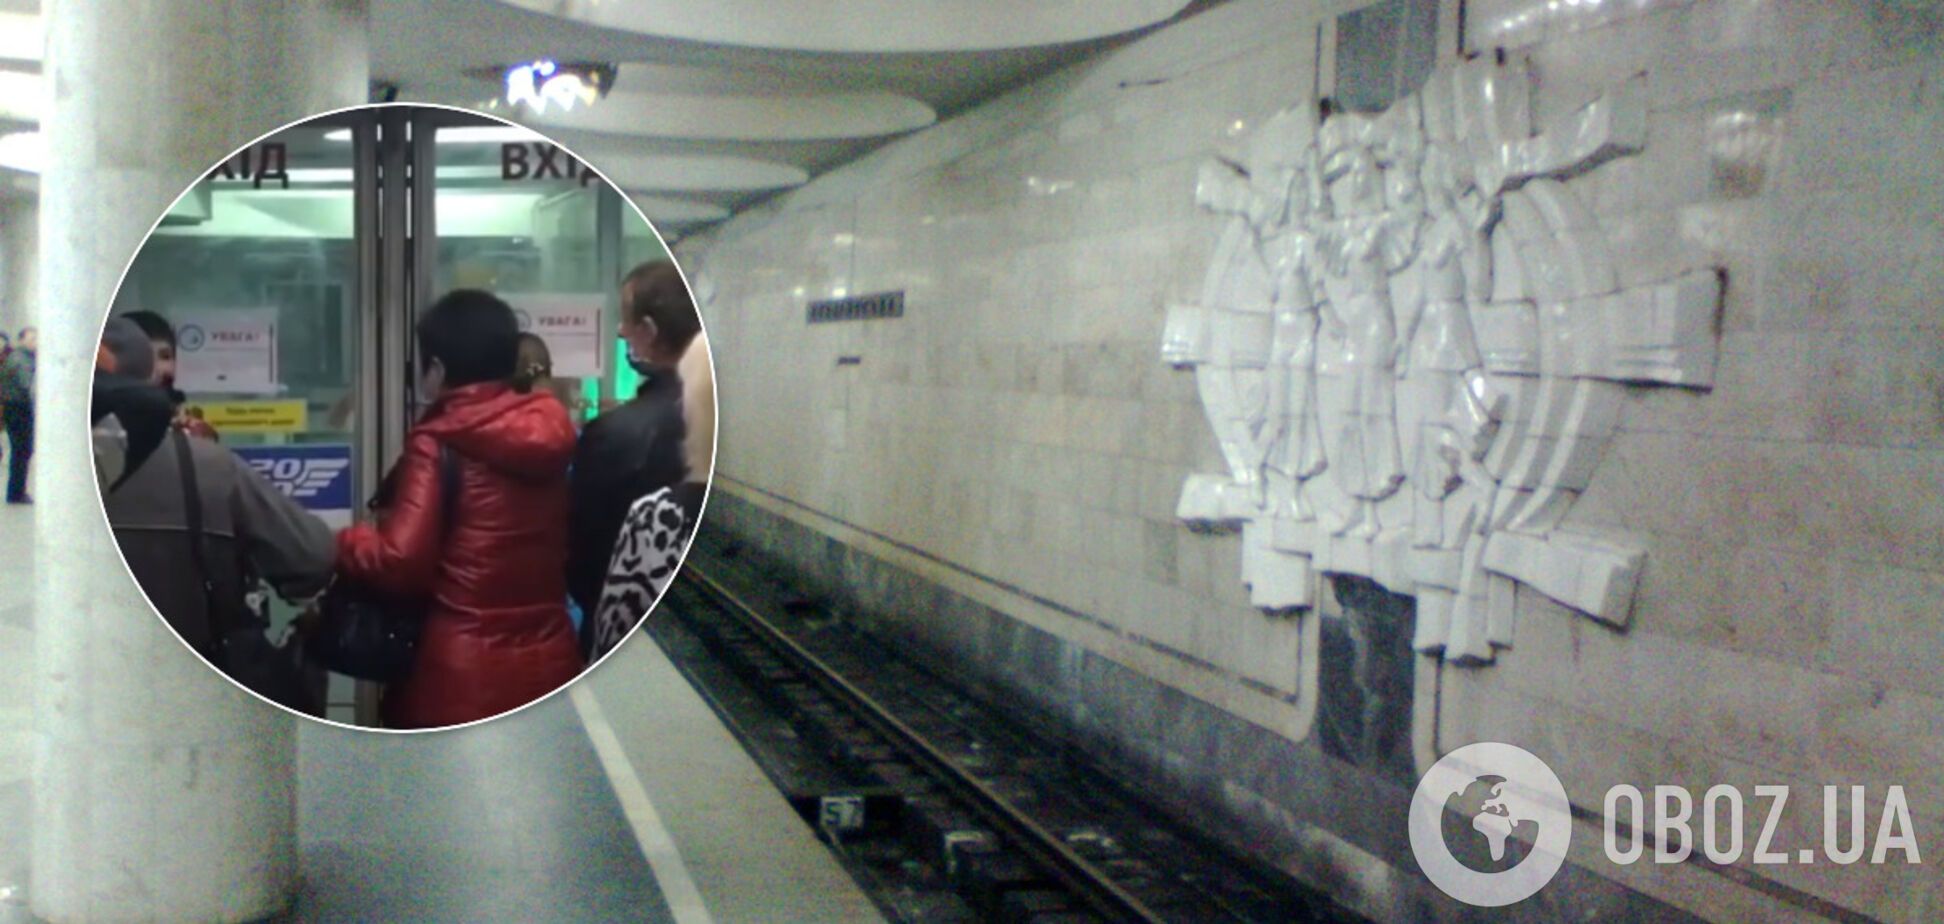 Метро Києва та Харкова відновило роботу: що відбувається в підземці. Відео